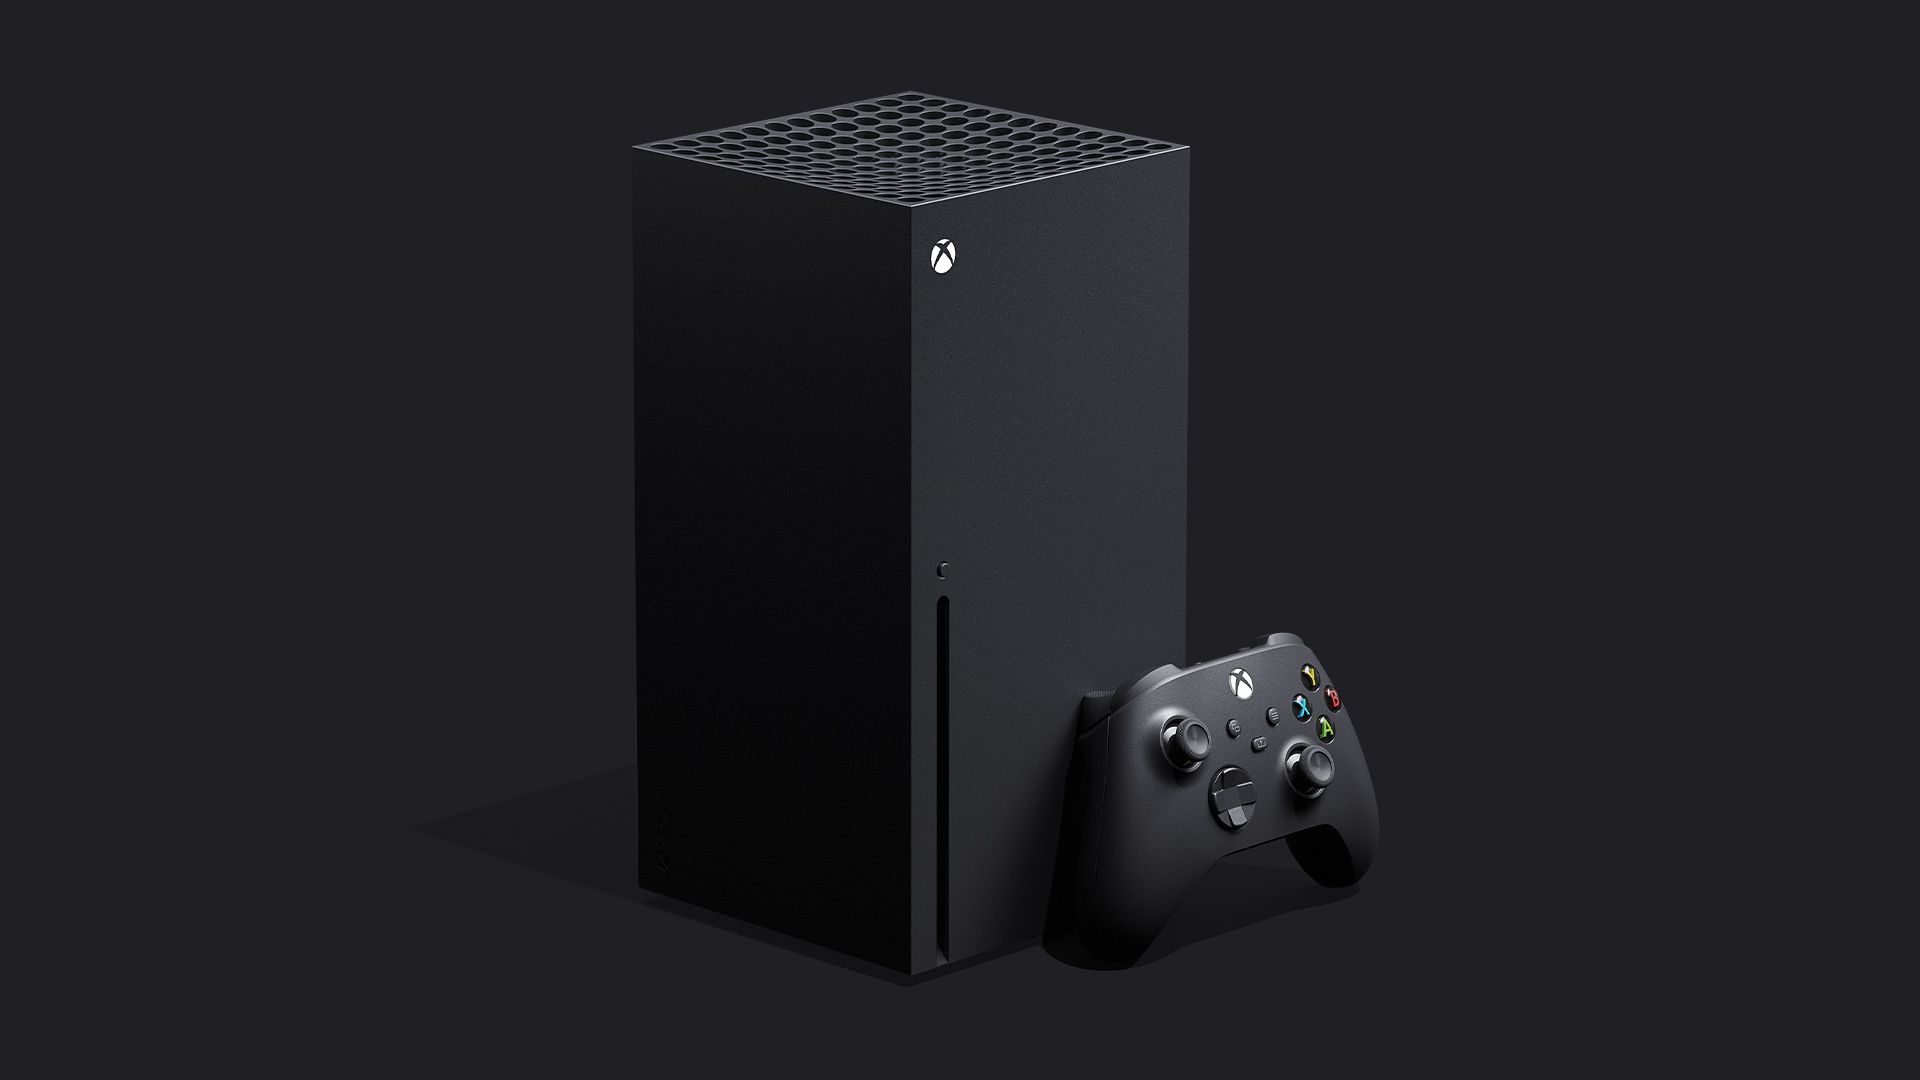 Confira todos os Jogos Otimizados para Xbox One X